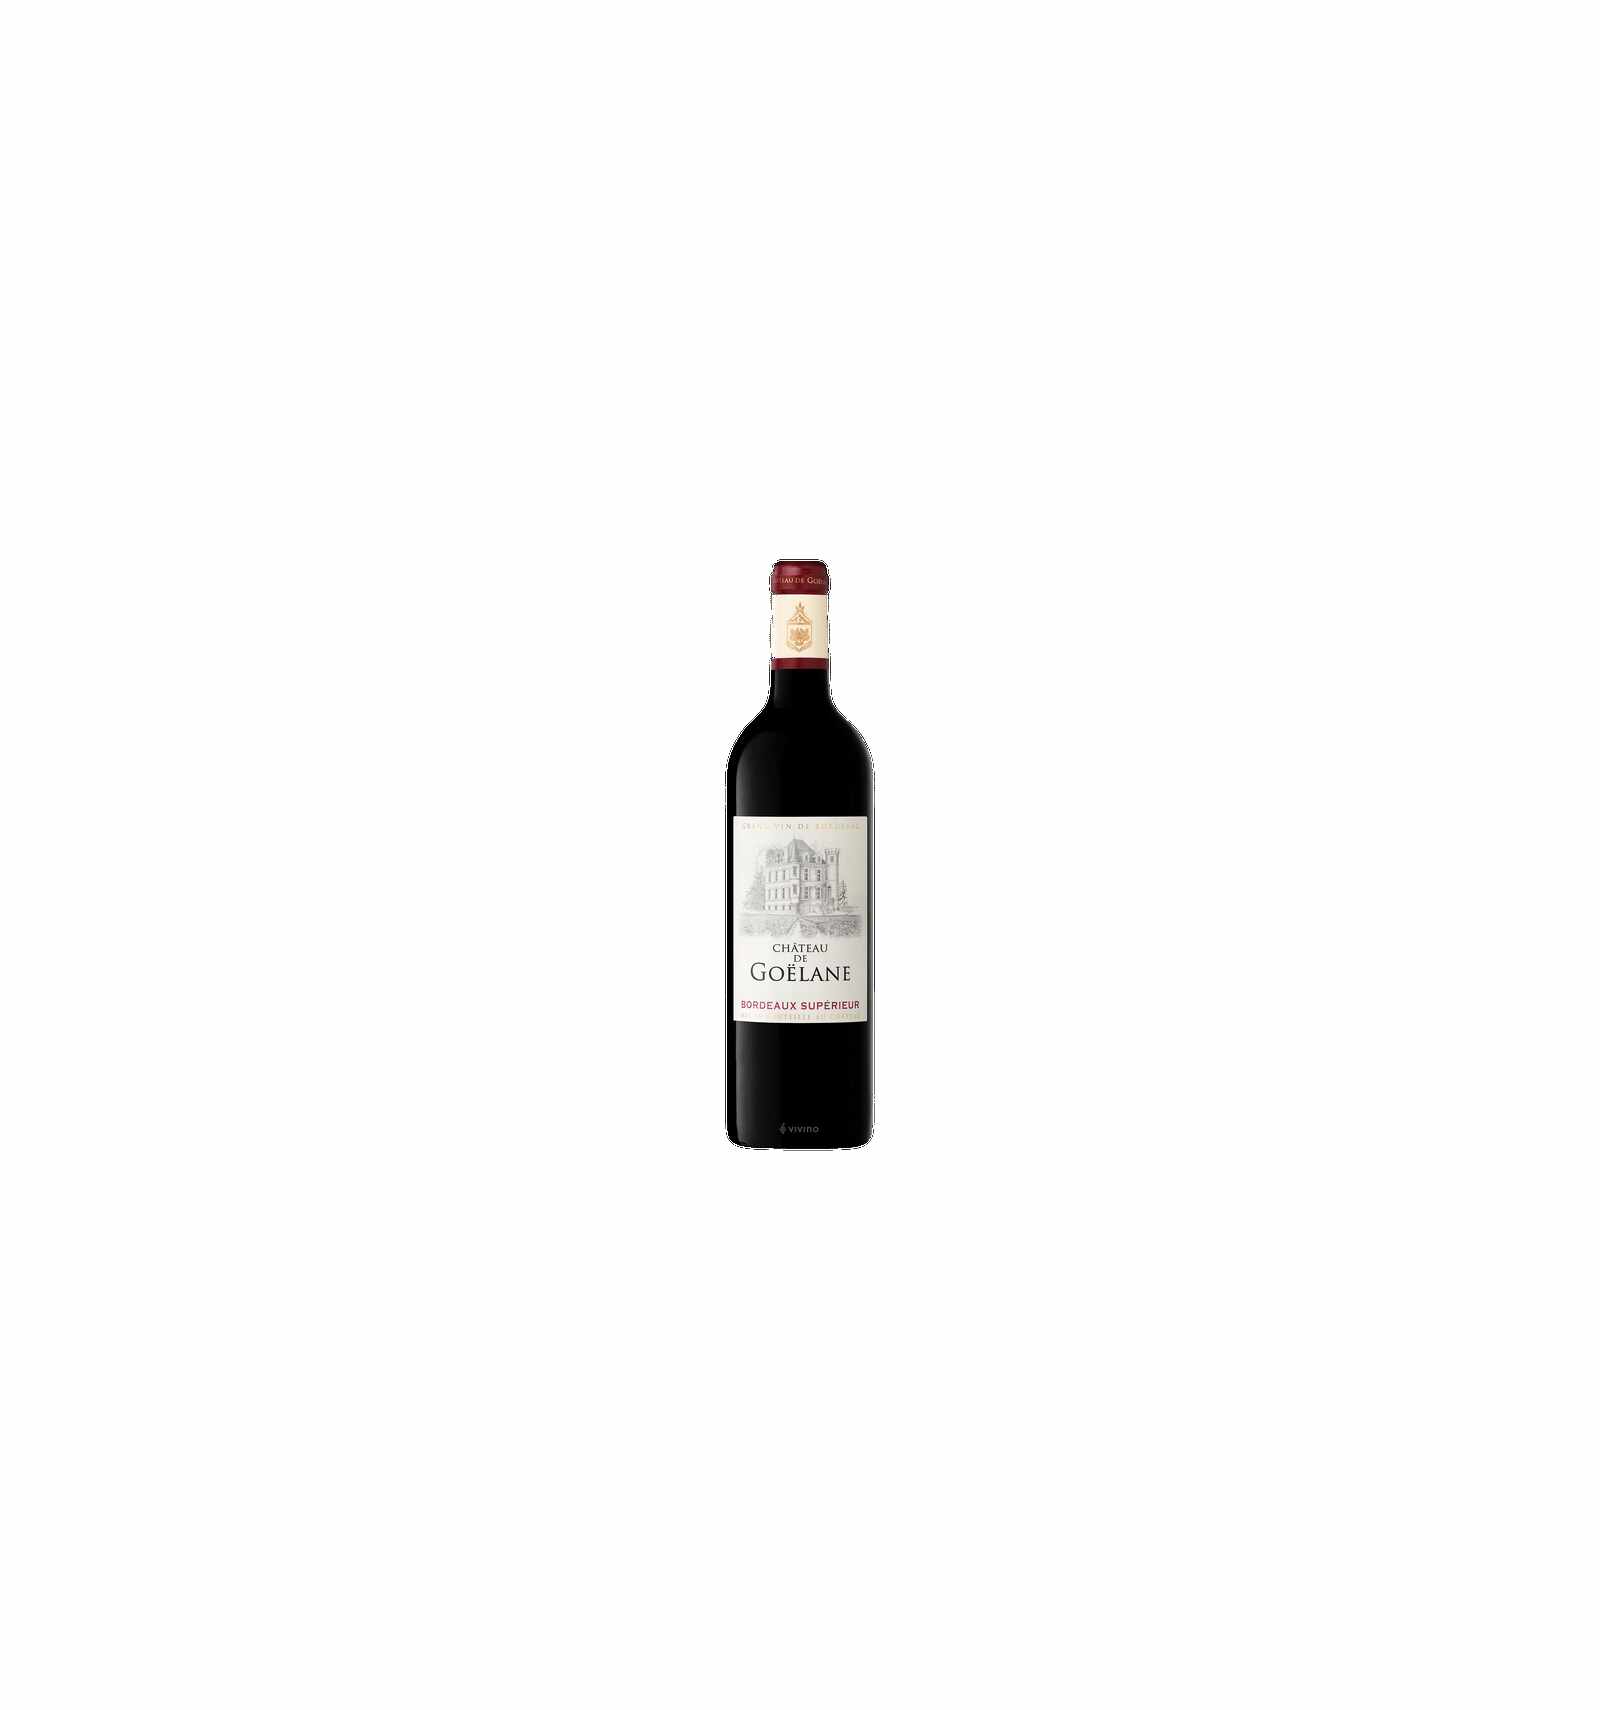 Vin rosu Chateau Goelane, 13% alc., 0.75L, Franta